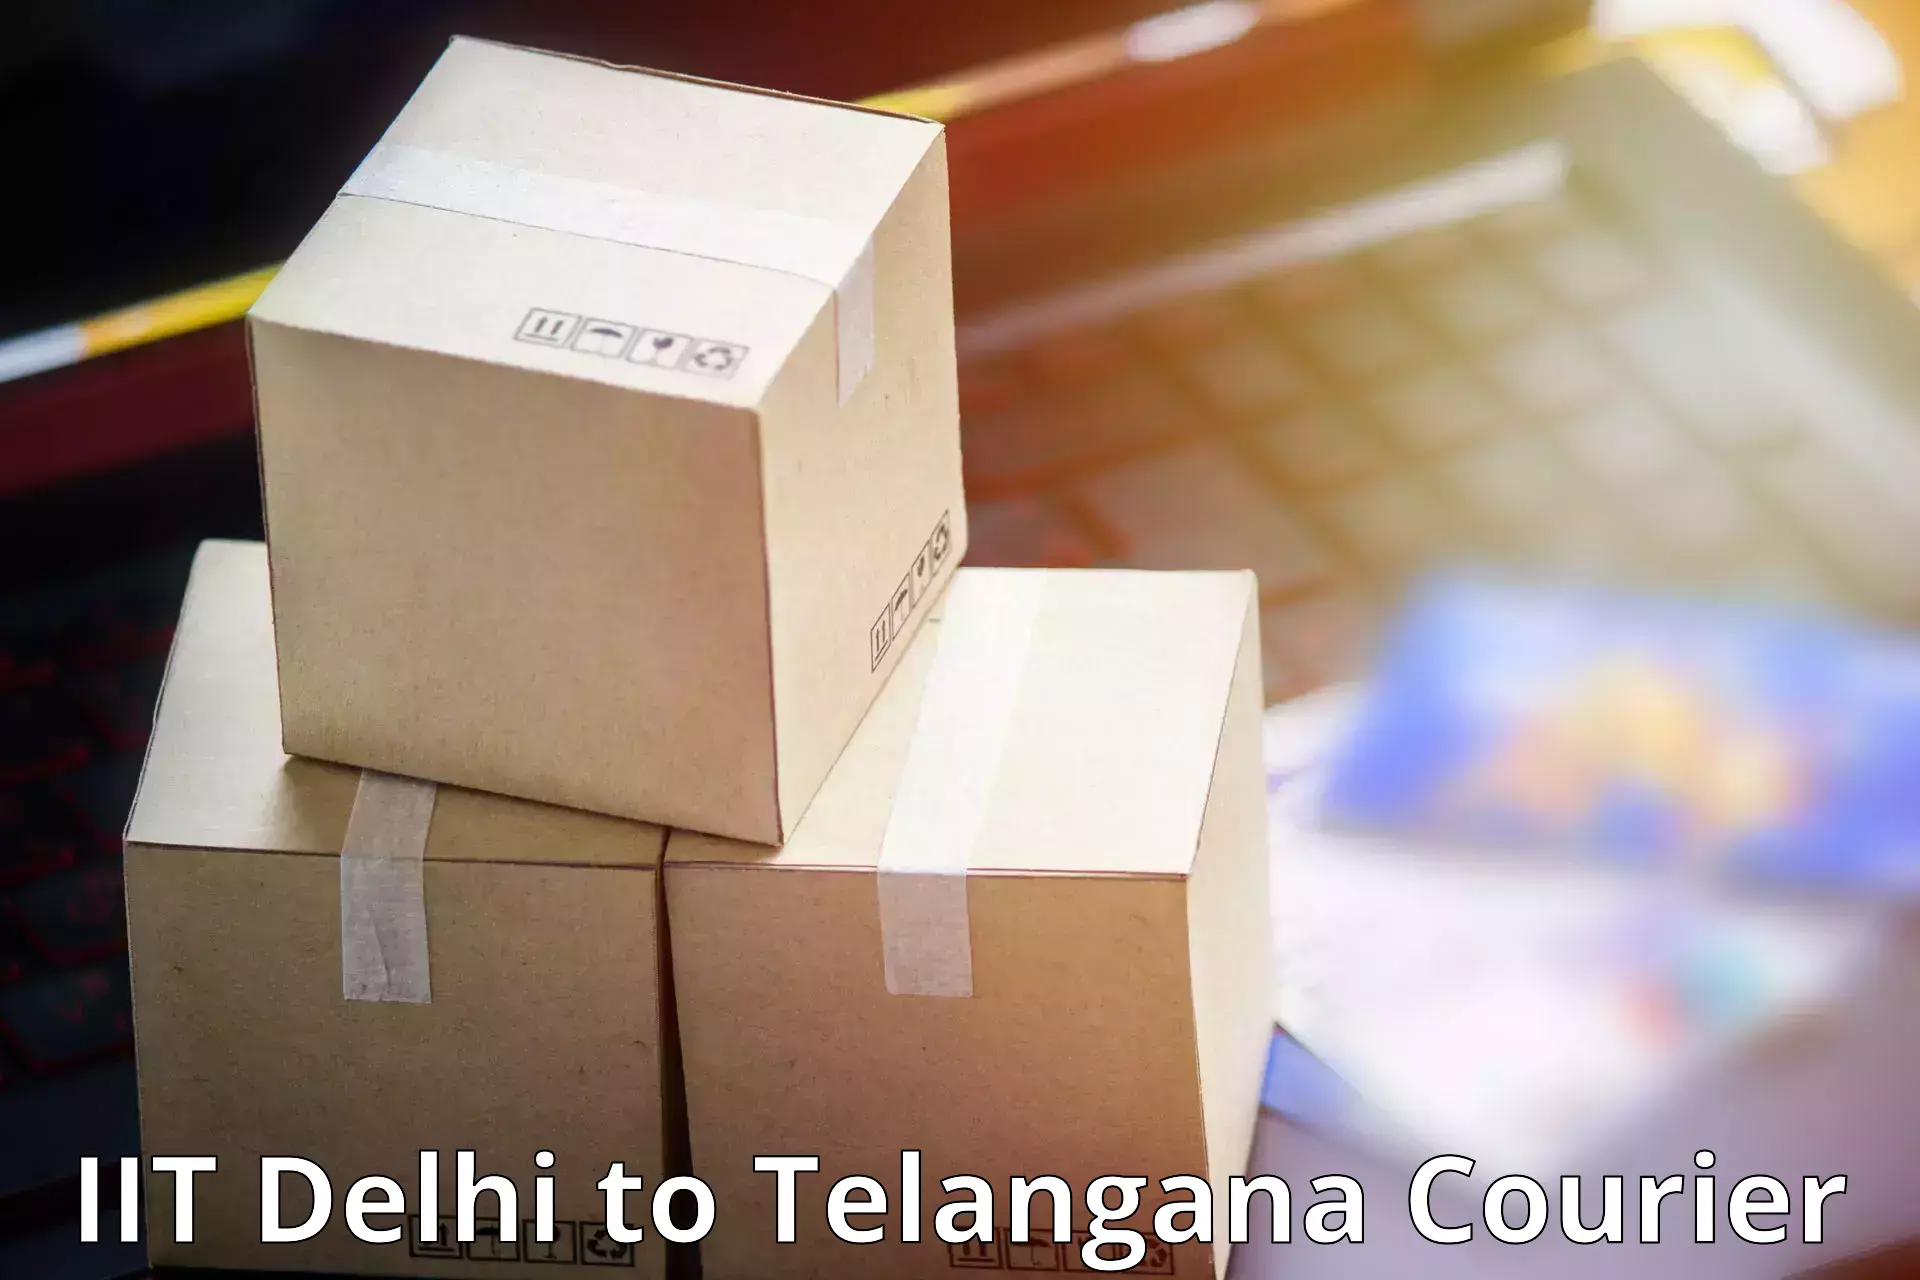 On-call courier service IIT Delhi to Huzur Nagar